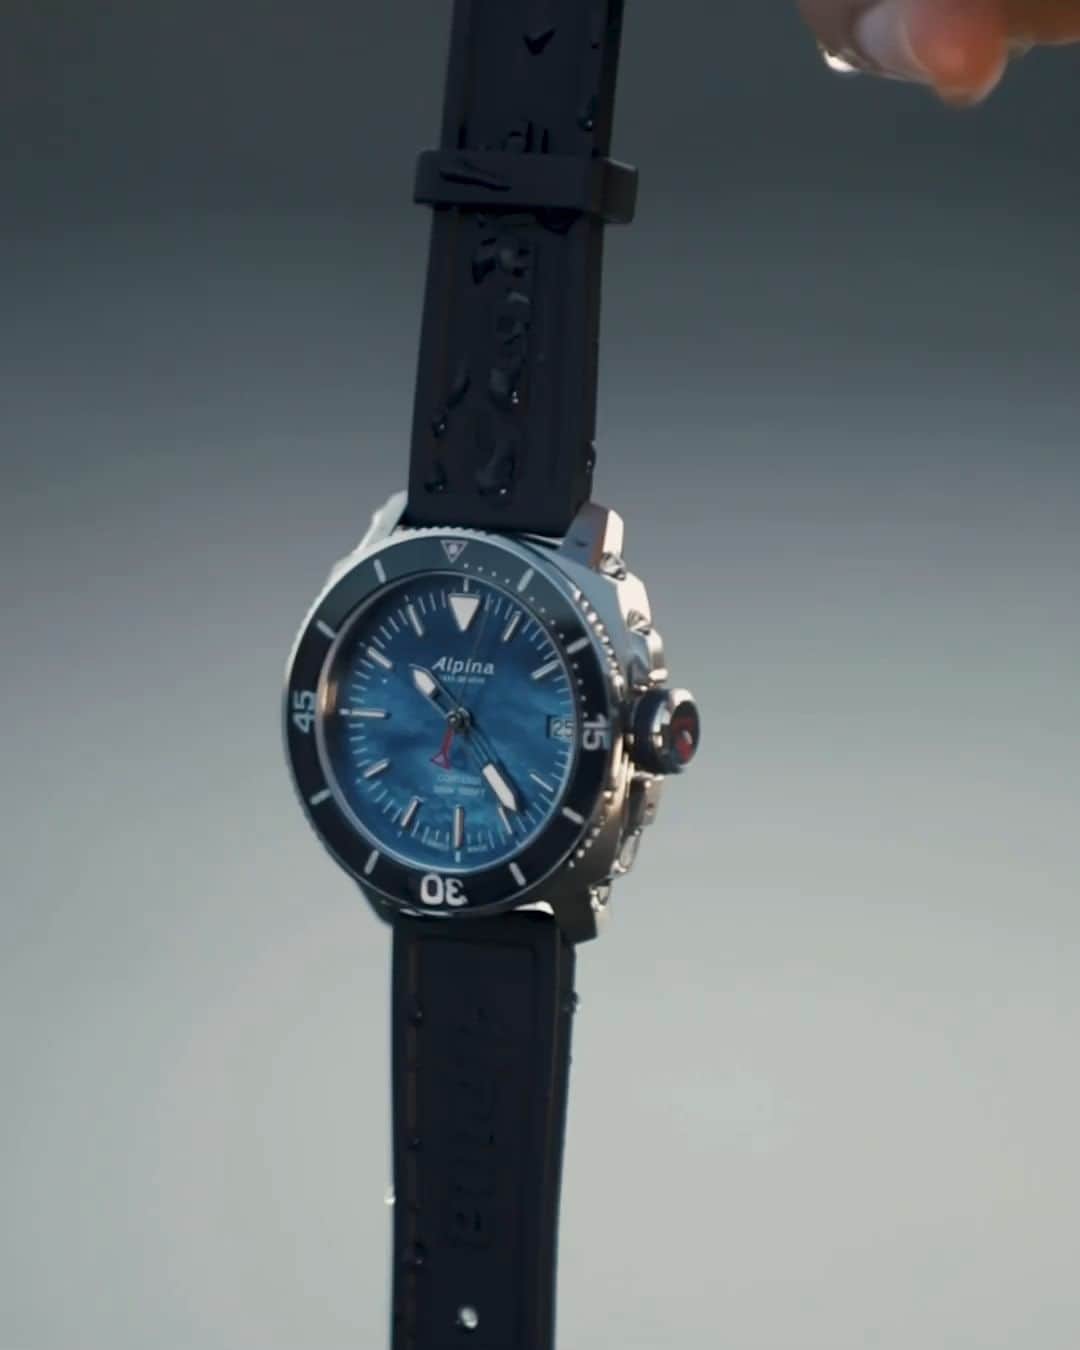 Alpina Watches Japanのインスタグラム：「優れた防水機能とスポーツウォッチらしからぬアナログデザインが存在感を放つ ㅤㅤㅤㅤㅤㅤㅤㅤㅤㅤㅤㅤㅤ バーインデックスが並ぶスタイリッシュなアナログダイヤルは、視認性とデザイン性を両立したシンプルさがアルピナらしい。水深300mにも耐えうる防水性能を誇るこちらは、アウトドアでの頼もしい相棒になってくれること間違いなし。旅行や出張先で役立つGMT機能付きなのも高ポイントです。 ㅤㅤㅤㅤㅤㅤㅤㅤㅤㅤㅤㅤㅤ 《シーストロング ダイバー300 GMT》 AL-247LNN4TV6 ¥88,000 (税込) クォーツ、30気圧防水、ラバーストラップ . . . . . . #Alpina #AlpinaWatchesJapan #swissmade #swisswatch #watch #wristwatch #sportwatch #outdoor #seastrong #diver #GMT #アルピナ #アルピナウォッチ #スイス時計 #時計 #腕時計 #スポーツウォッチ #アウトドア #時計好きな人と繋がりたい #シーストロング #ダイバー」